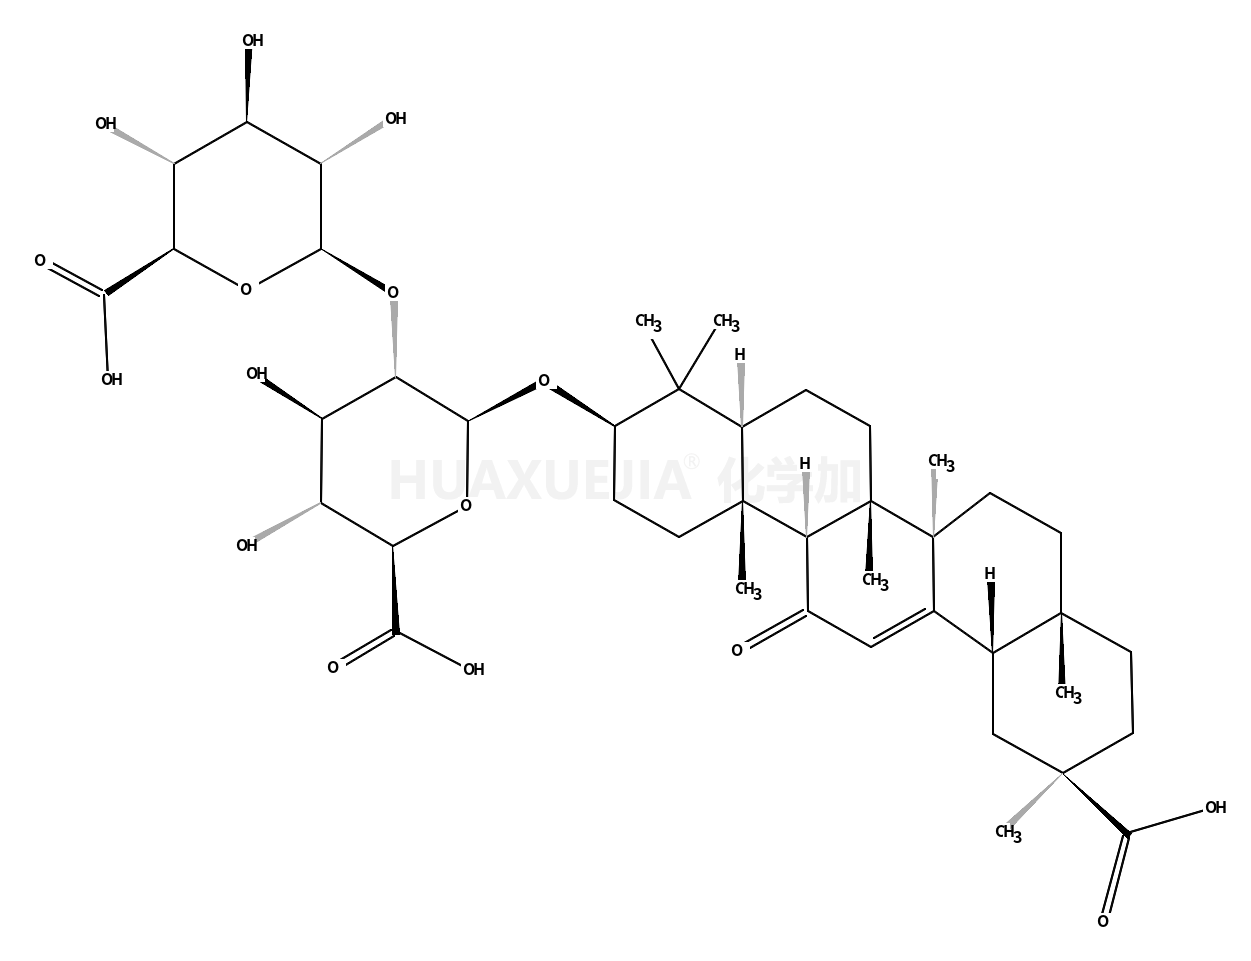 18α-Glycylrrhizin